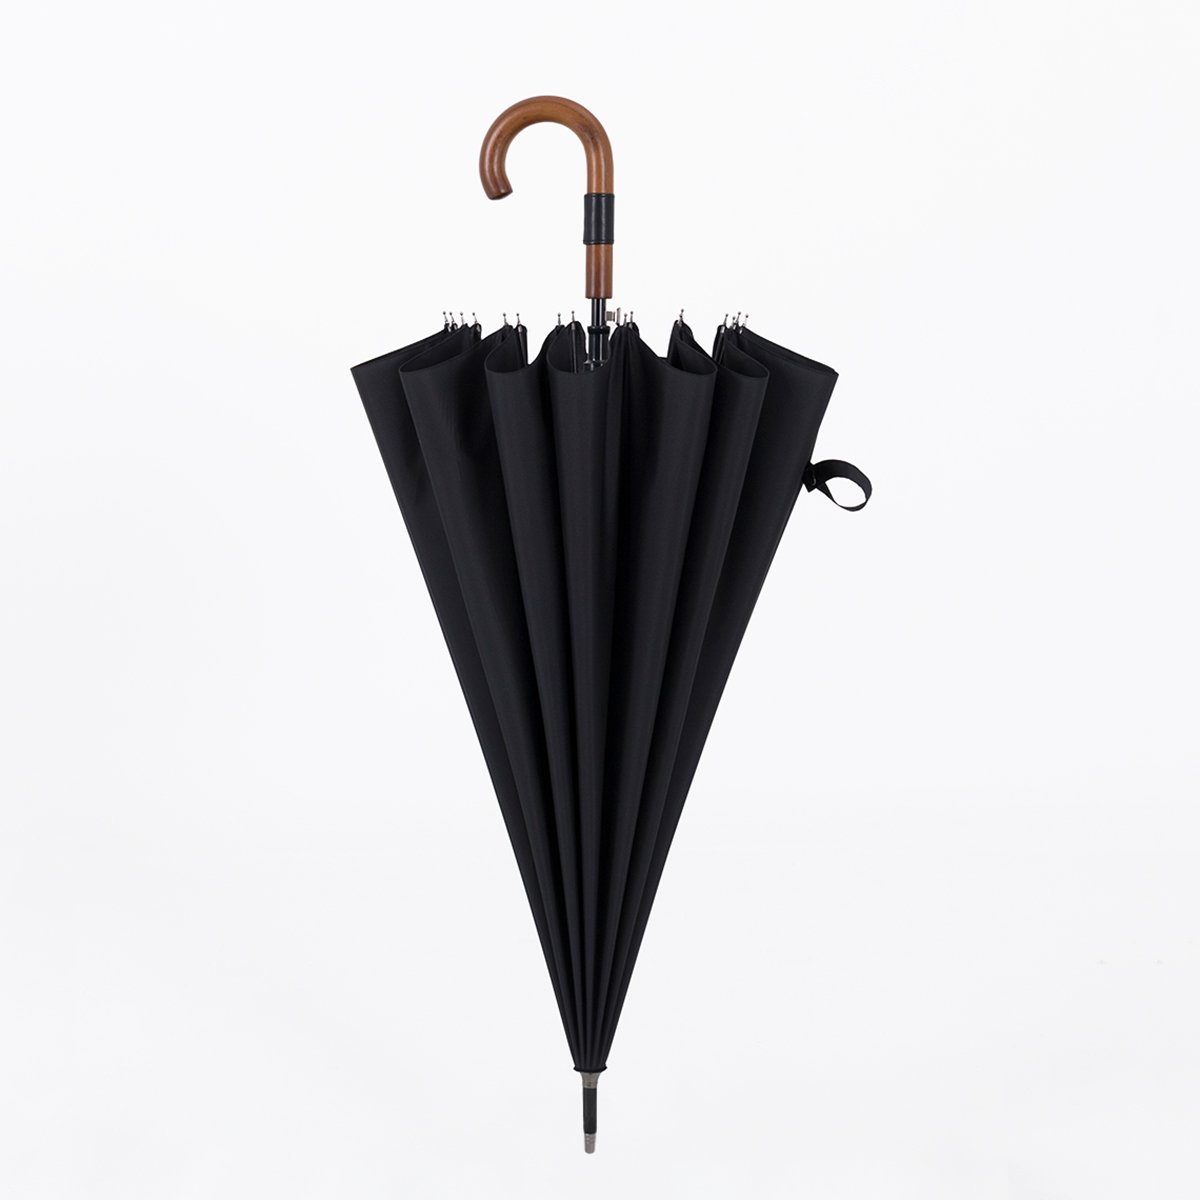 Large 120 cm Wooden Handle Premium Umbrella Parachase Black 